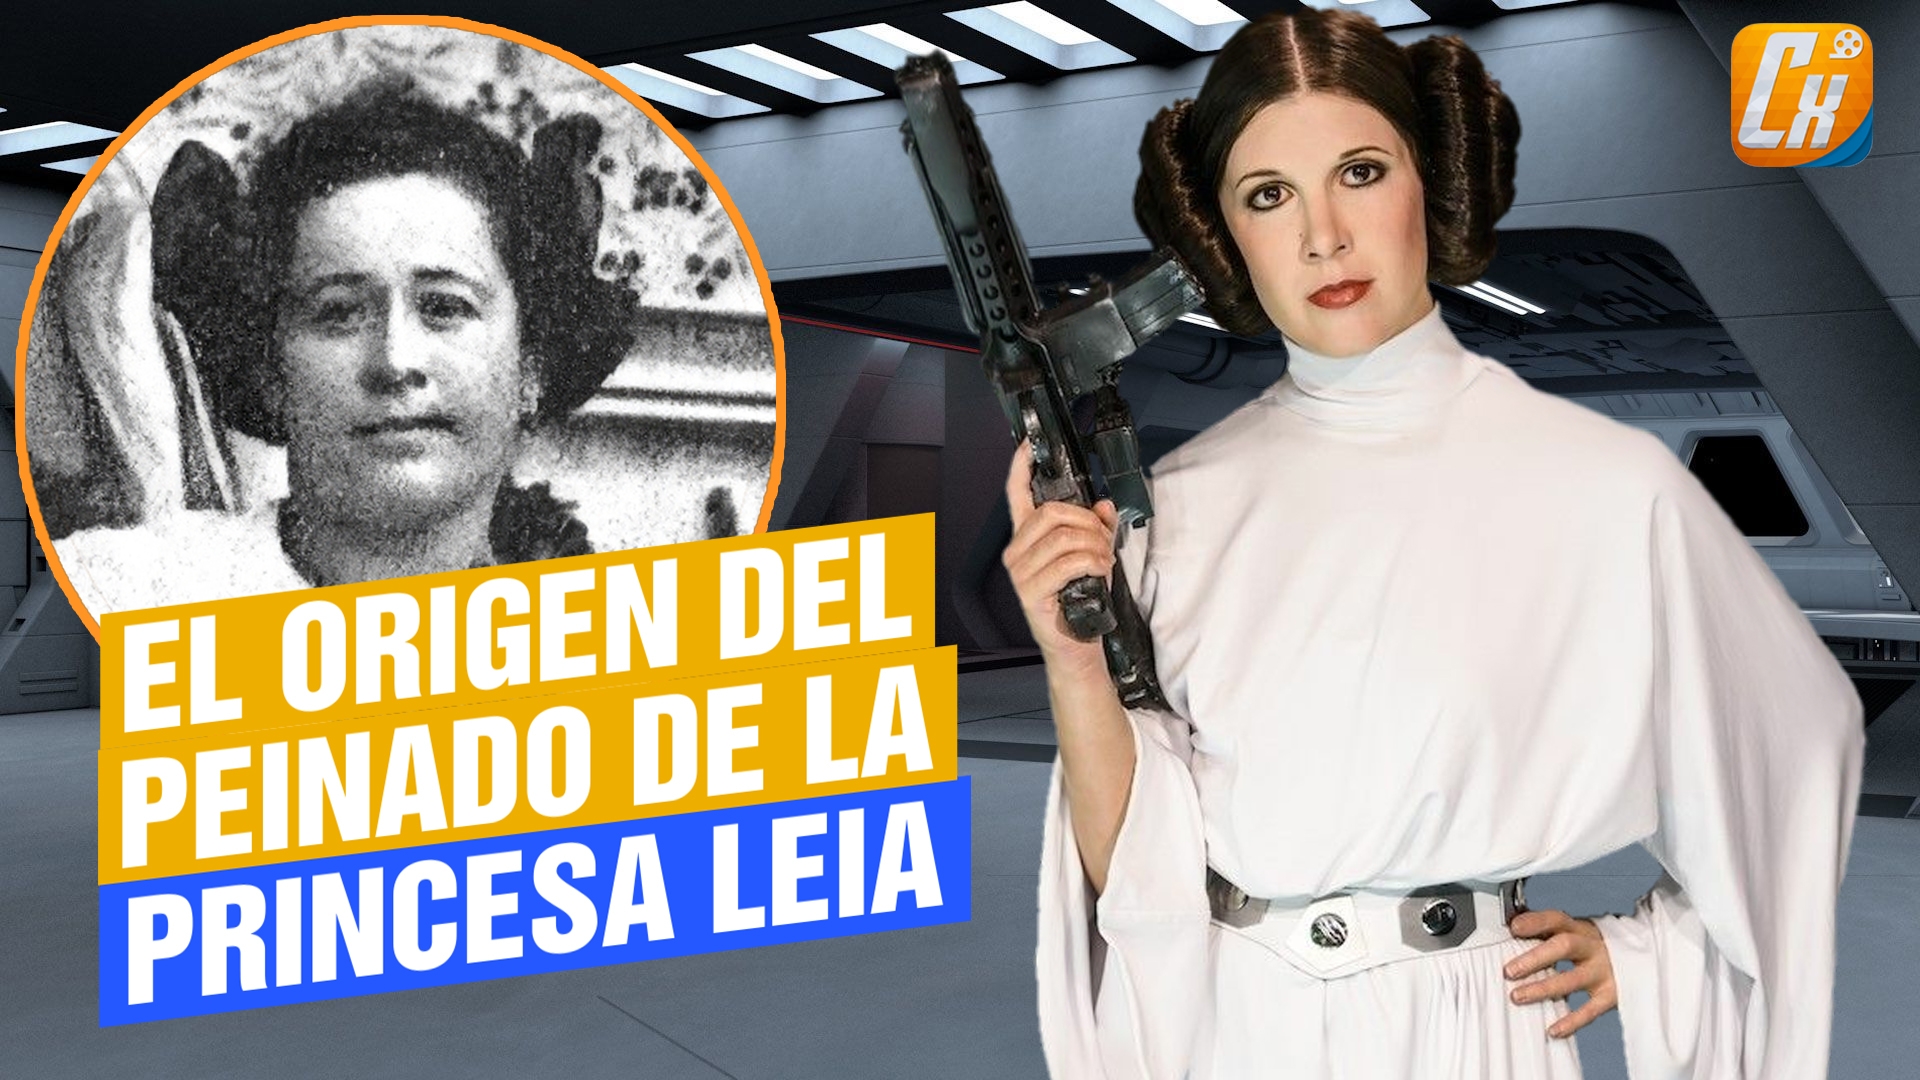 El peinado de la princesa Leia fue inspirado por una revolucionaria  mexicana. - Cinexcepción